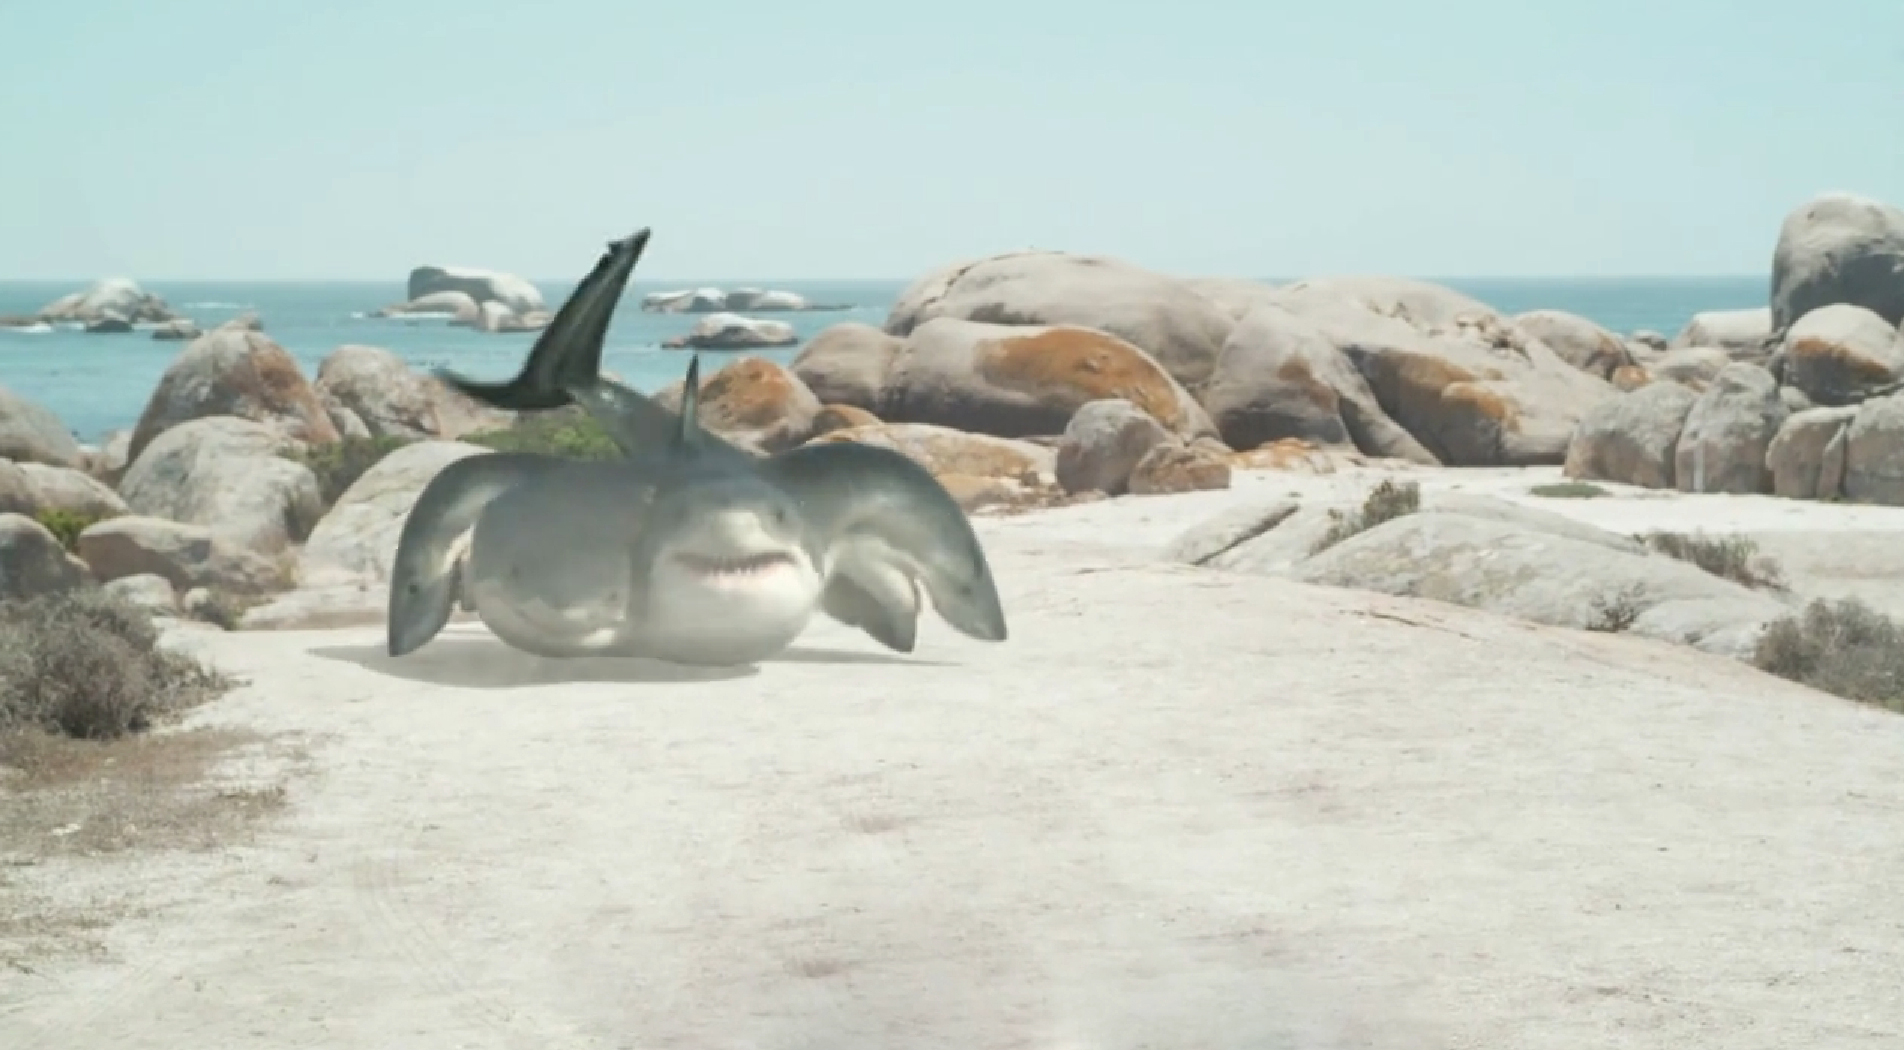 这部电影里的鲨鱼用头走路导演的脑洞真是太大了